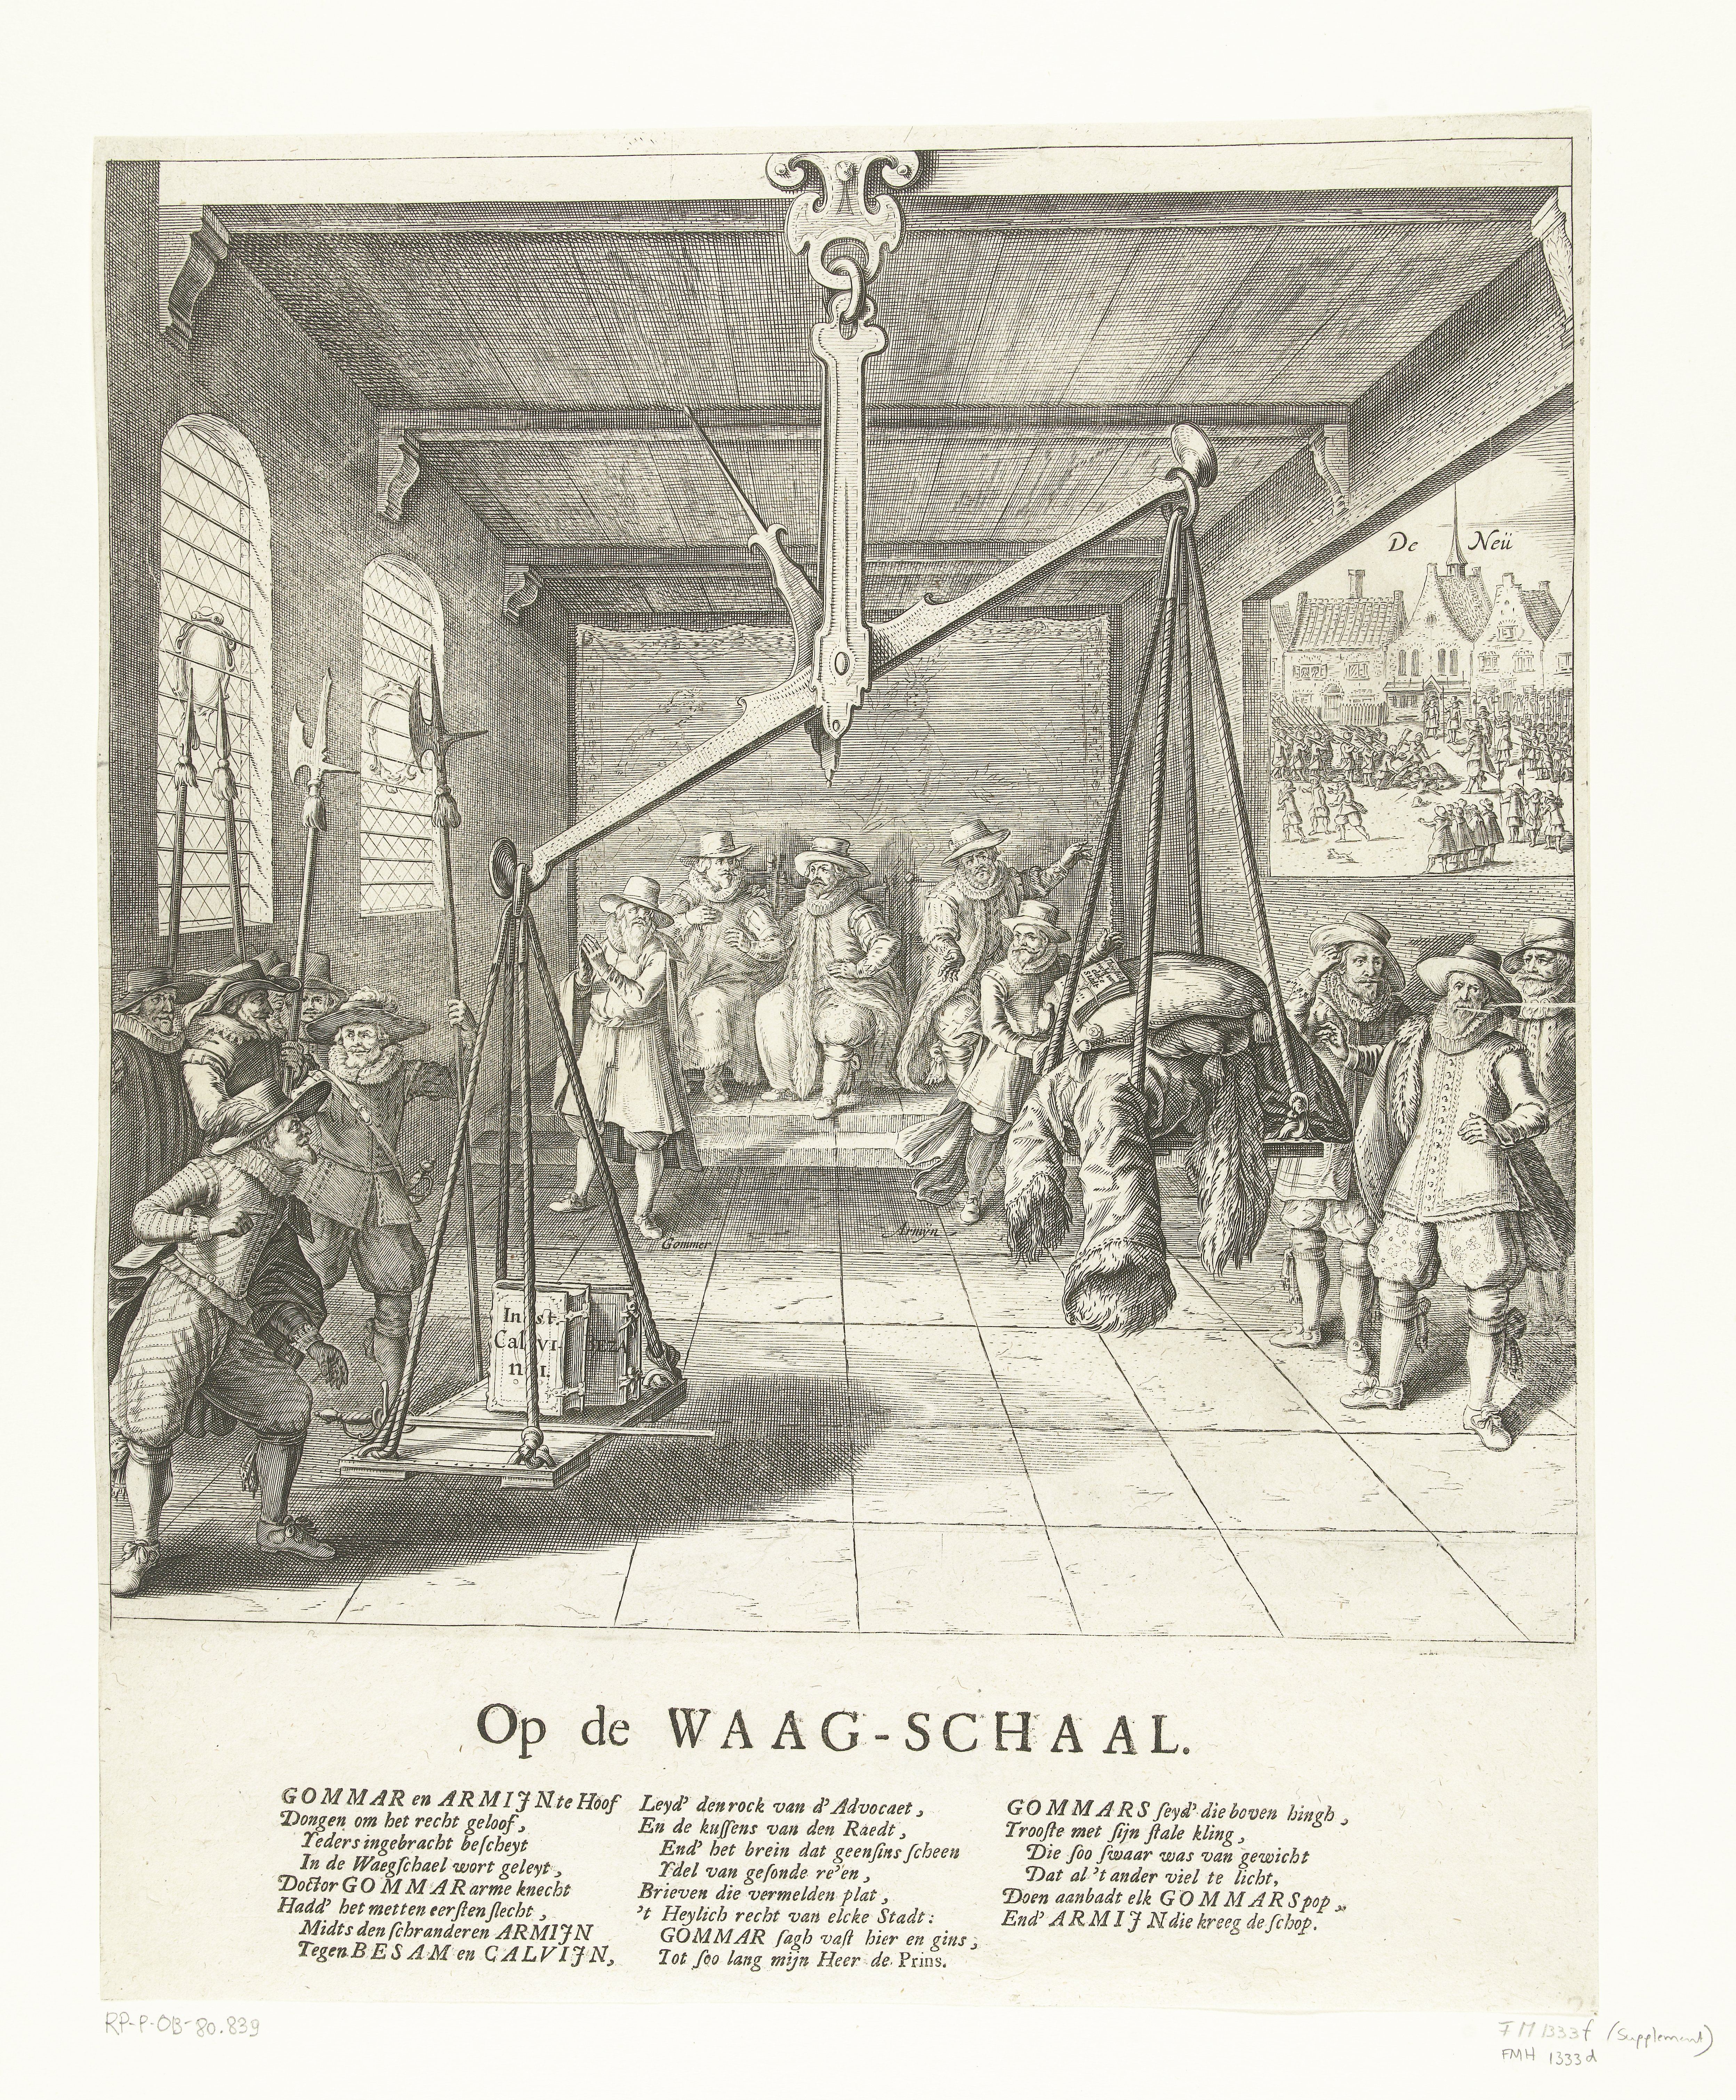 Groot Slijm lezing File:De Weegschaal, 1618 Op de Waag-Schaal (titel op object),  RP-P-OB-80.839.jpg - Wikimedia Commons